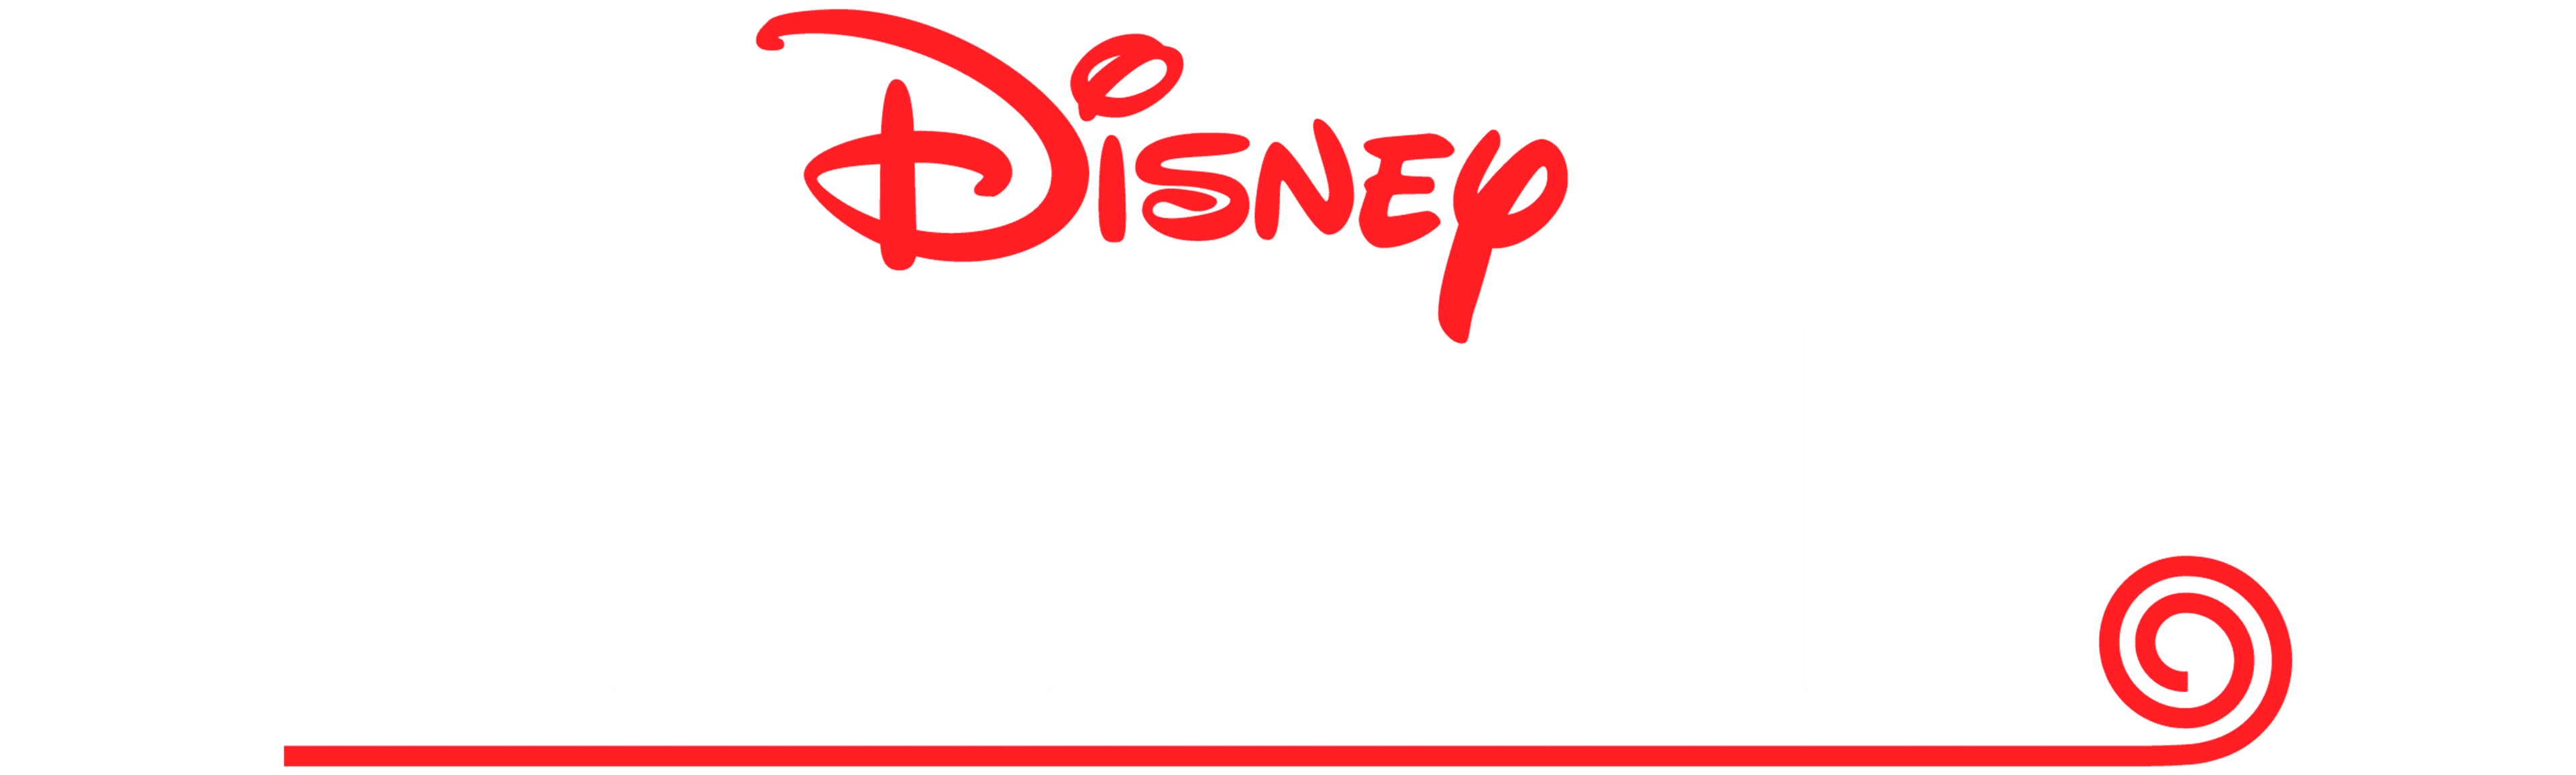 Disney Insider logo